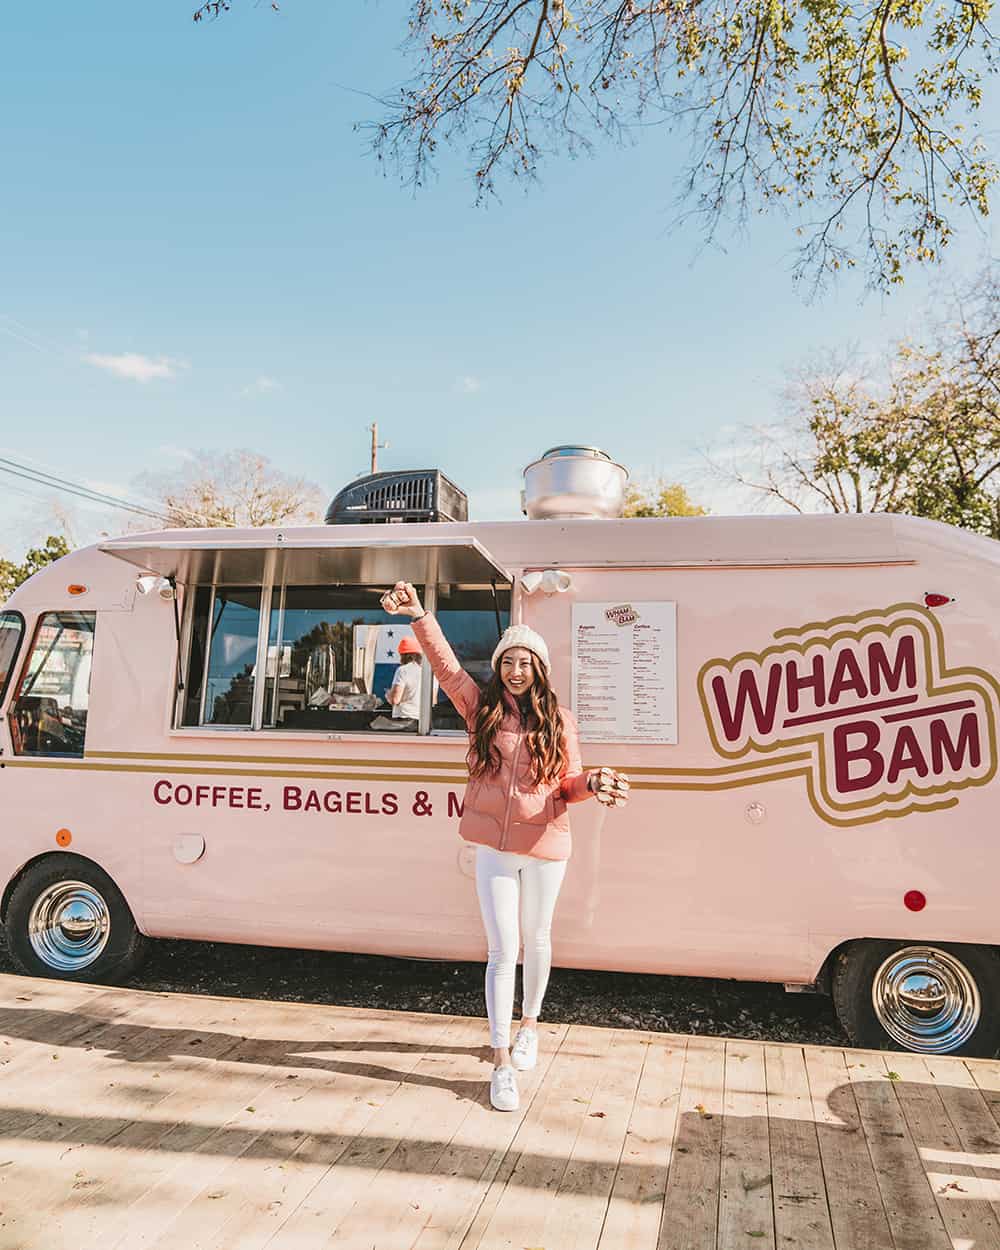 Wham Bam food truck in Austin Texas